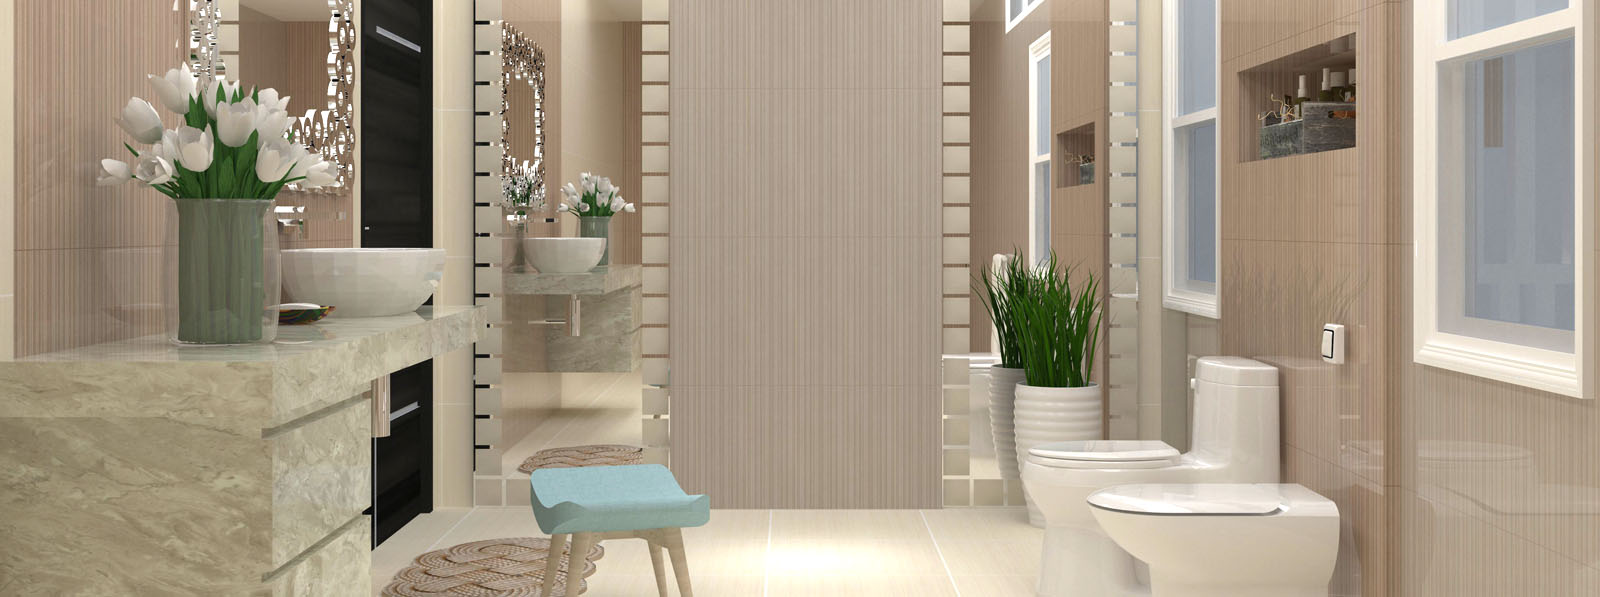 Mariwasa Siam Ceramics Inc Full Hd, Bathroom Floor Tiles Design Philippines